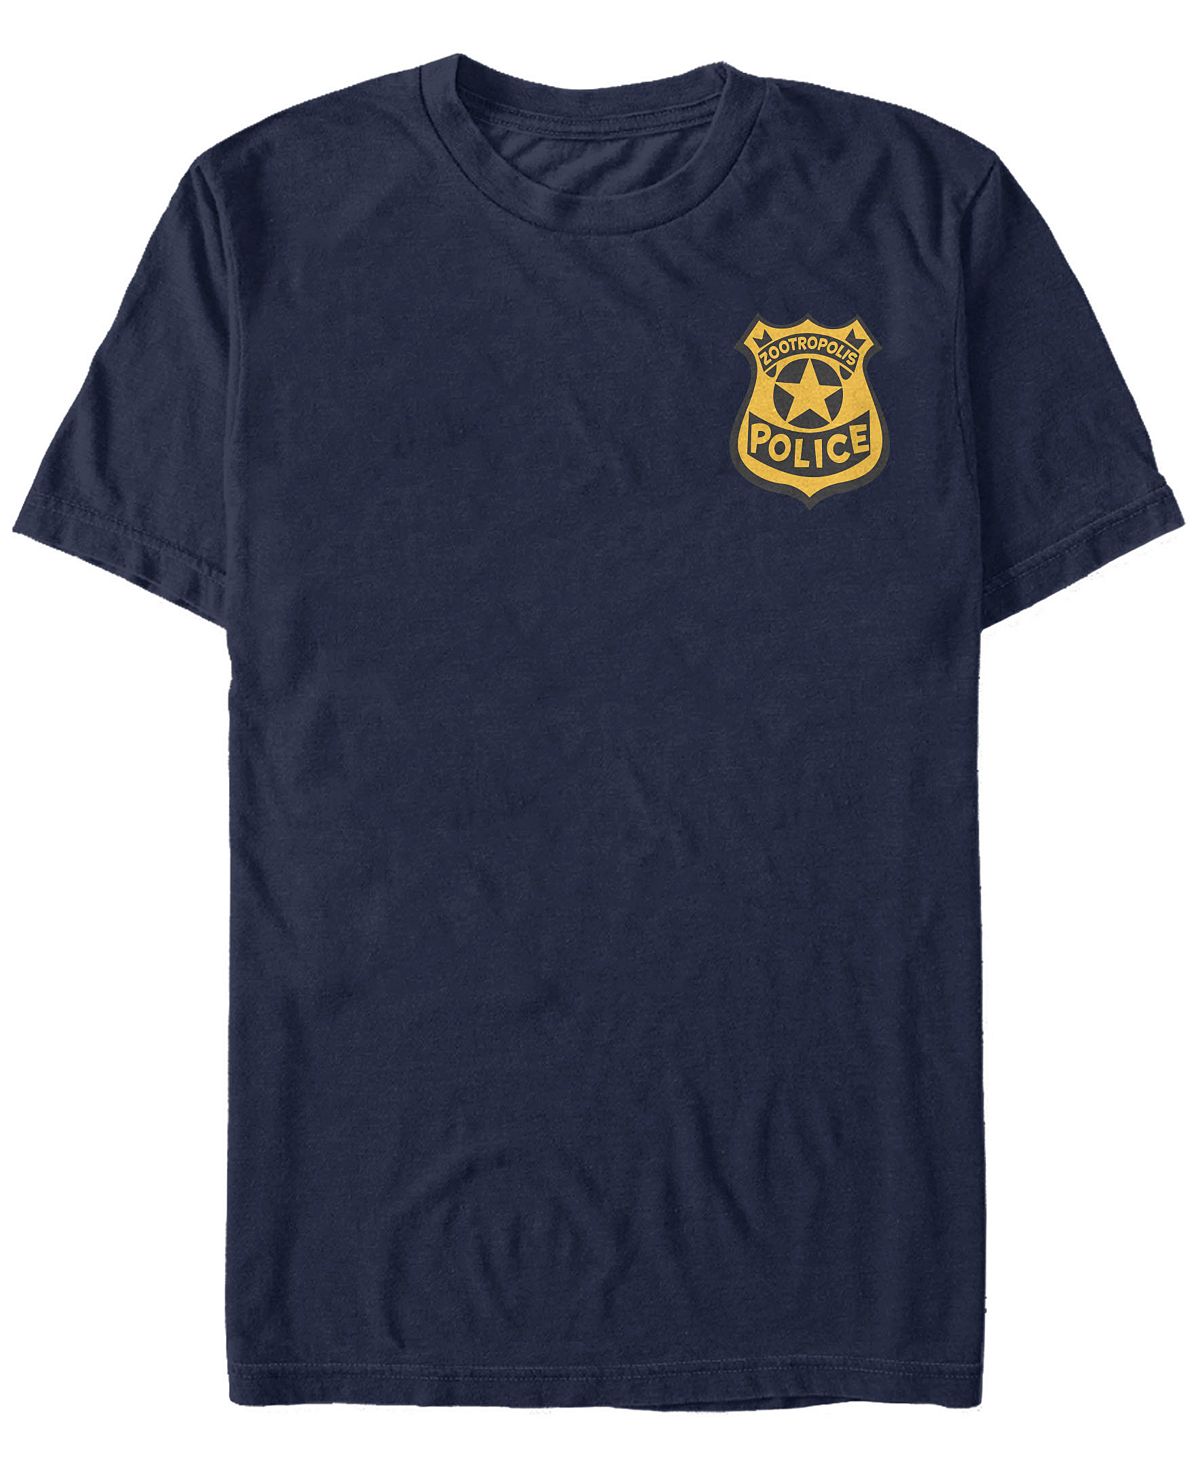 Мужская футболка с коротким рукавом со значком полиции зверополиса Fifth Sun, синий